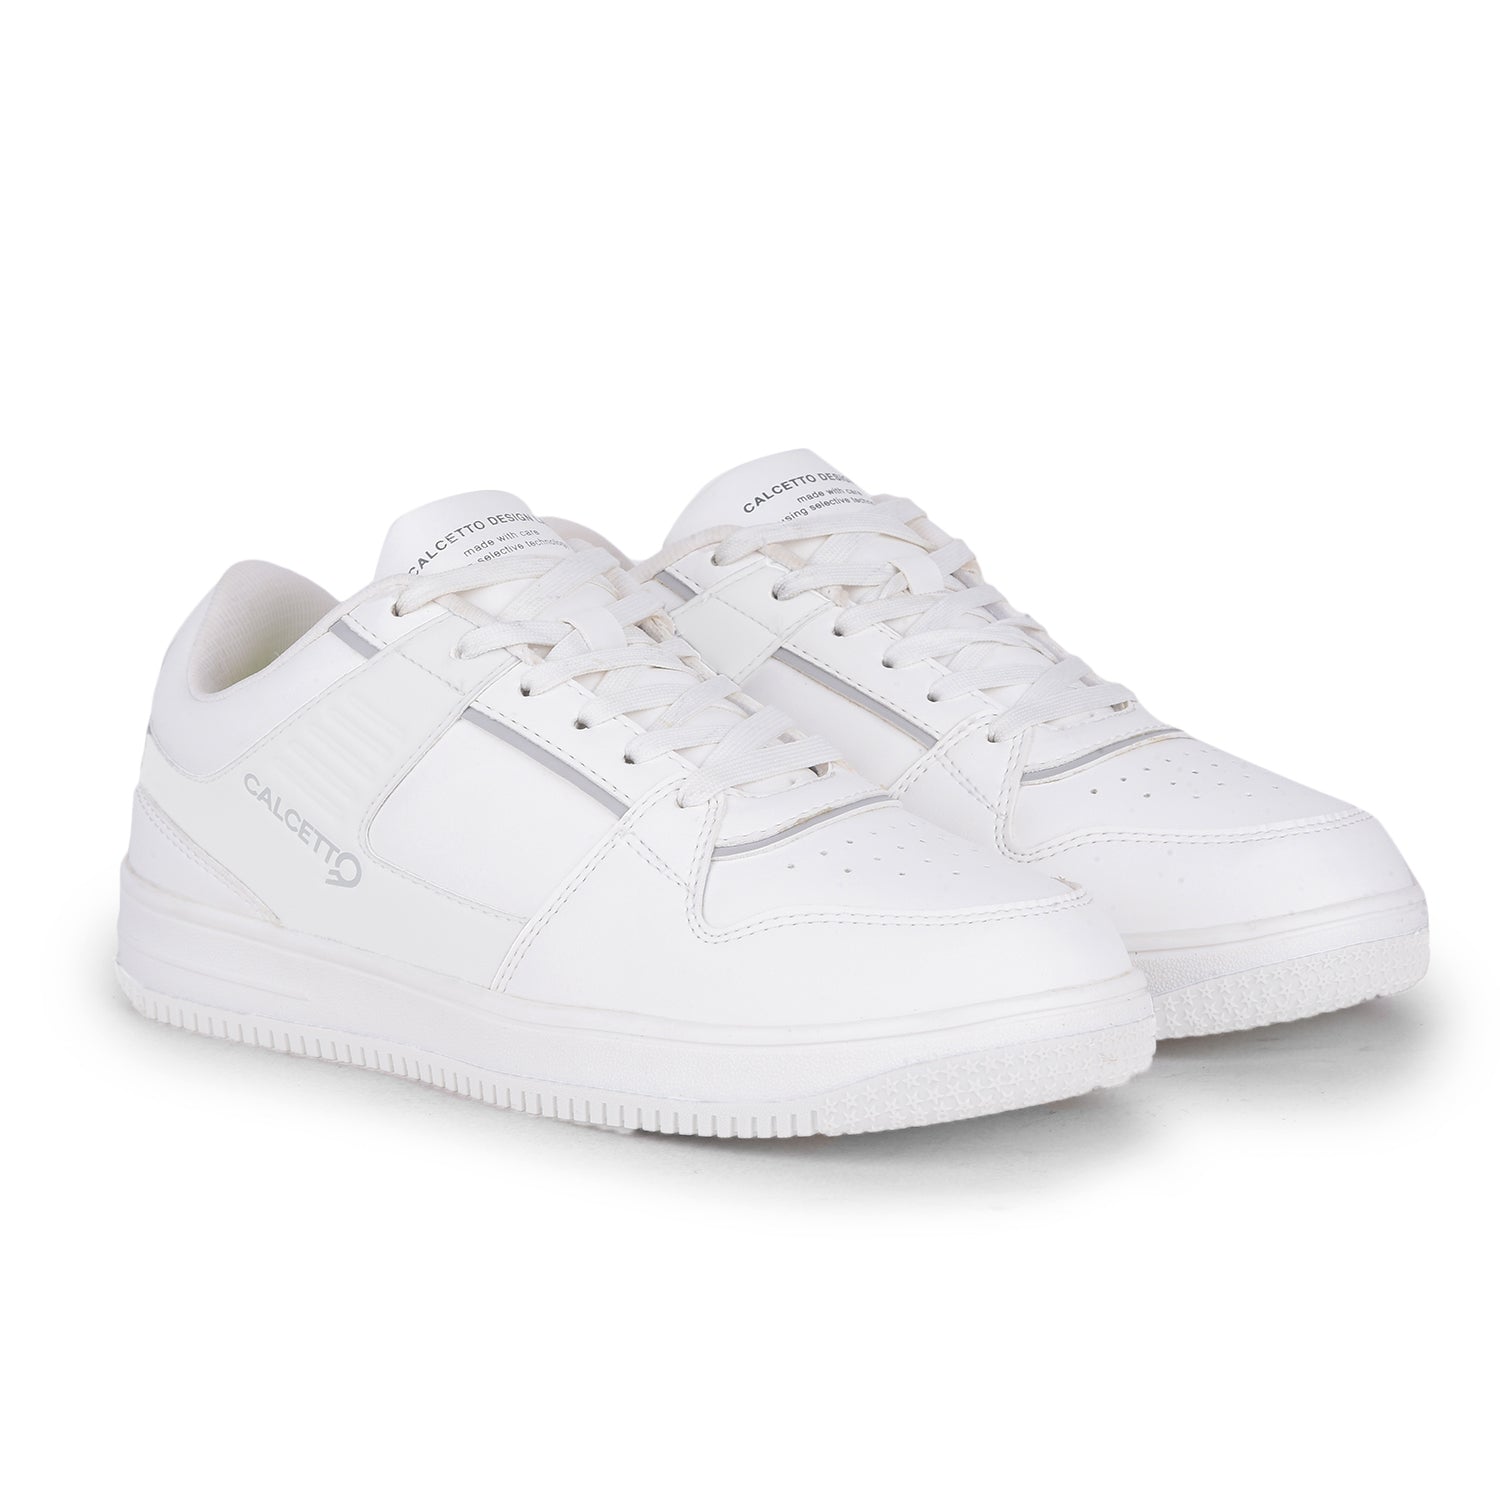 Calcetto CLT-5102 All White Men Sneaker